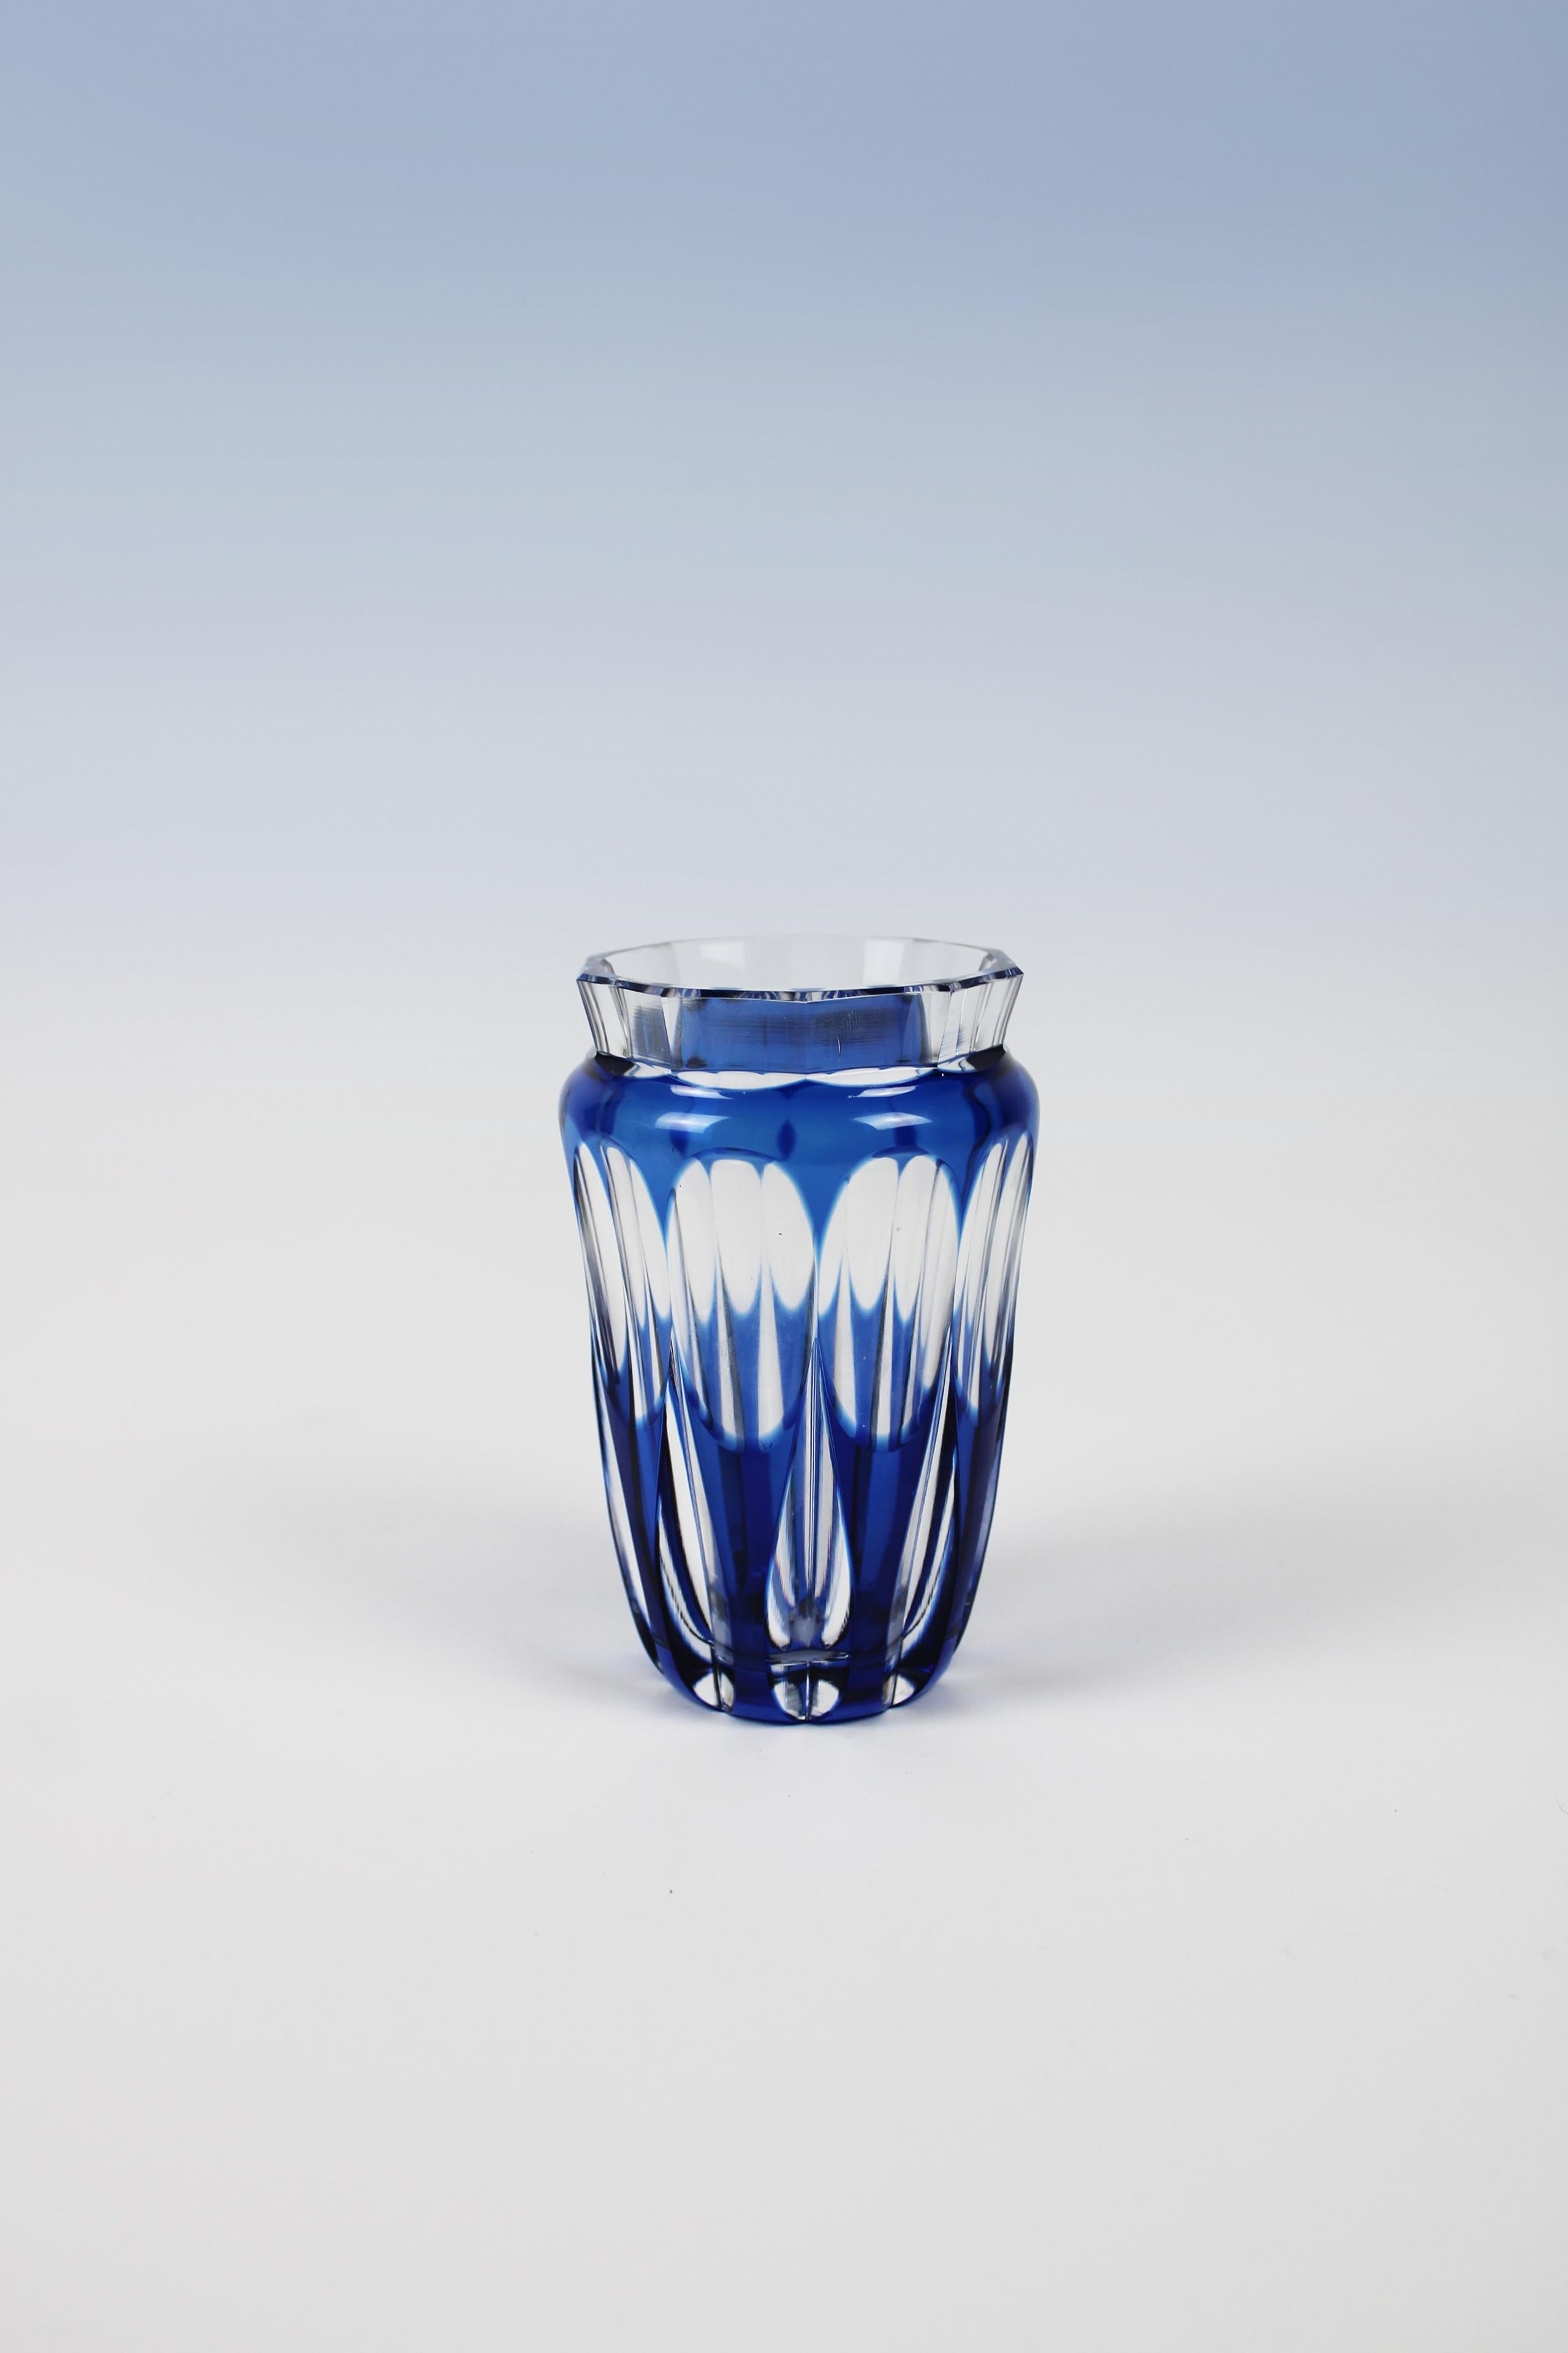 Ce vase original et adorable de Val St. Lambert, une manufacture belge connue pour sa verrerie, montre également avec ce vase bleu qu'il mérite son nom. La forme mignonne courbée court avec un relief qui varie entre le verre bleu et le verre